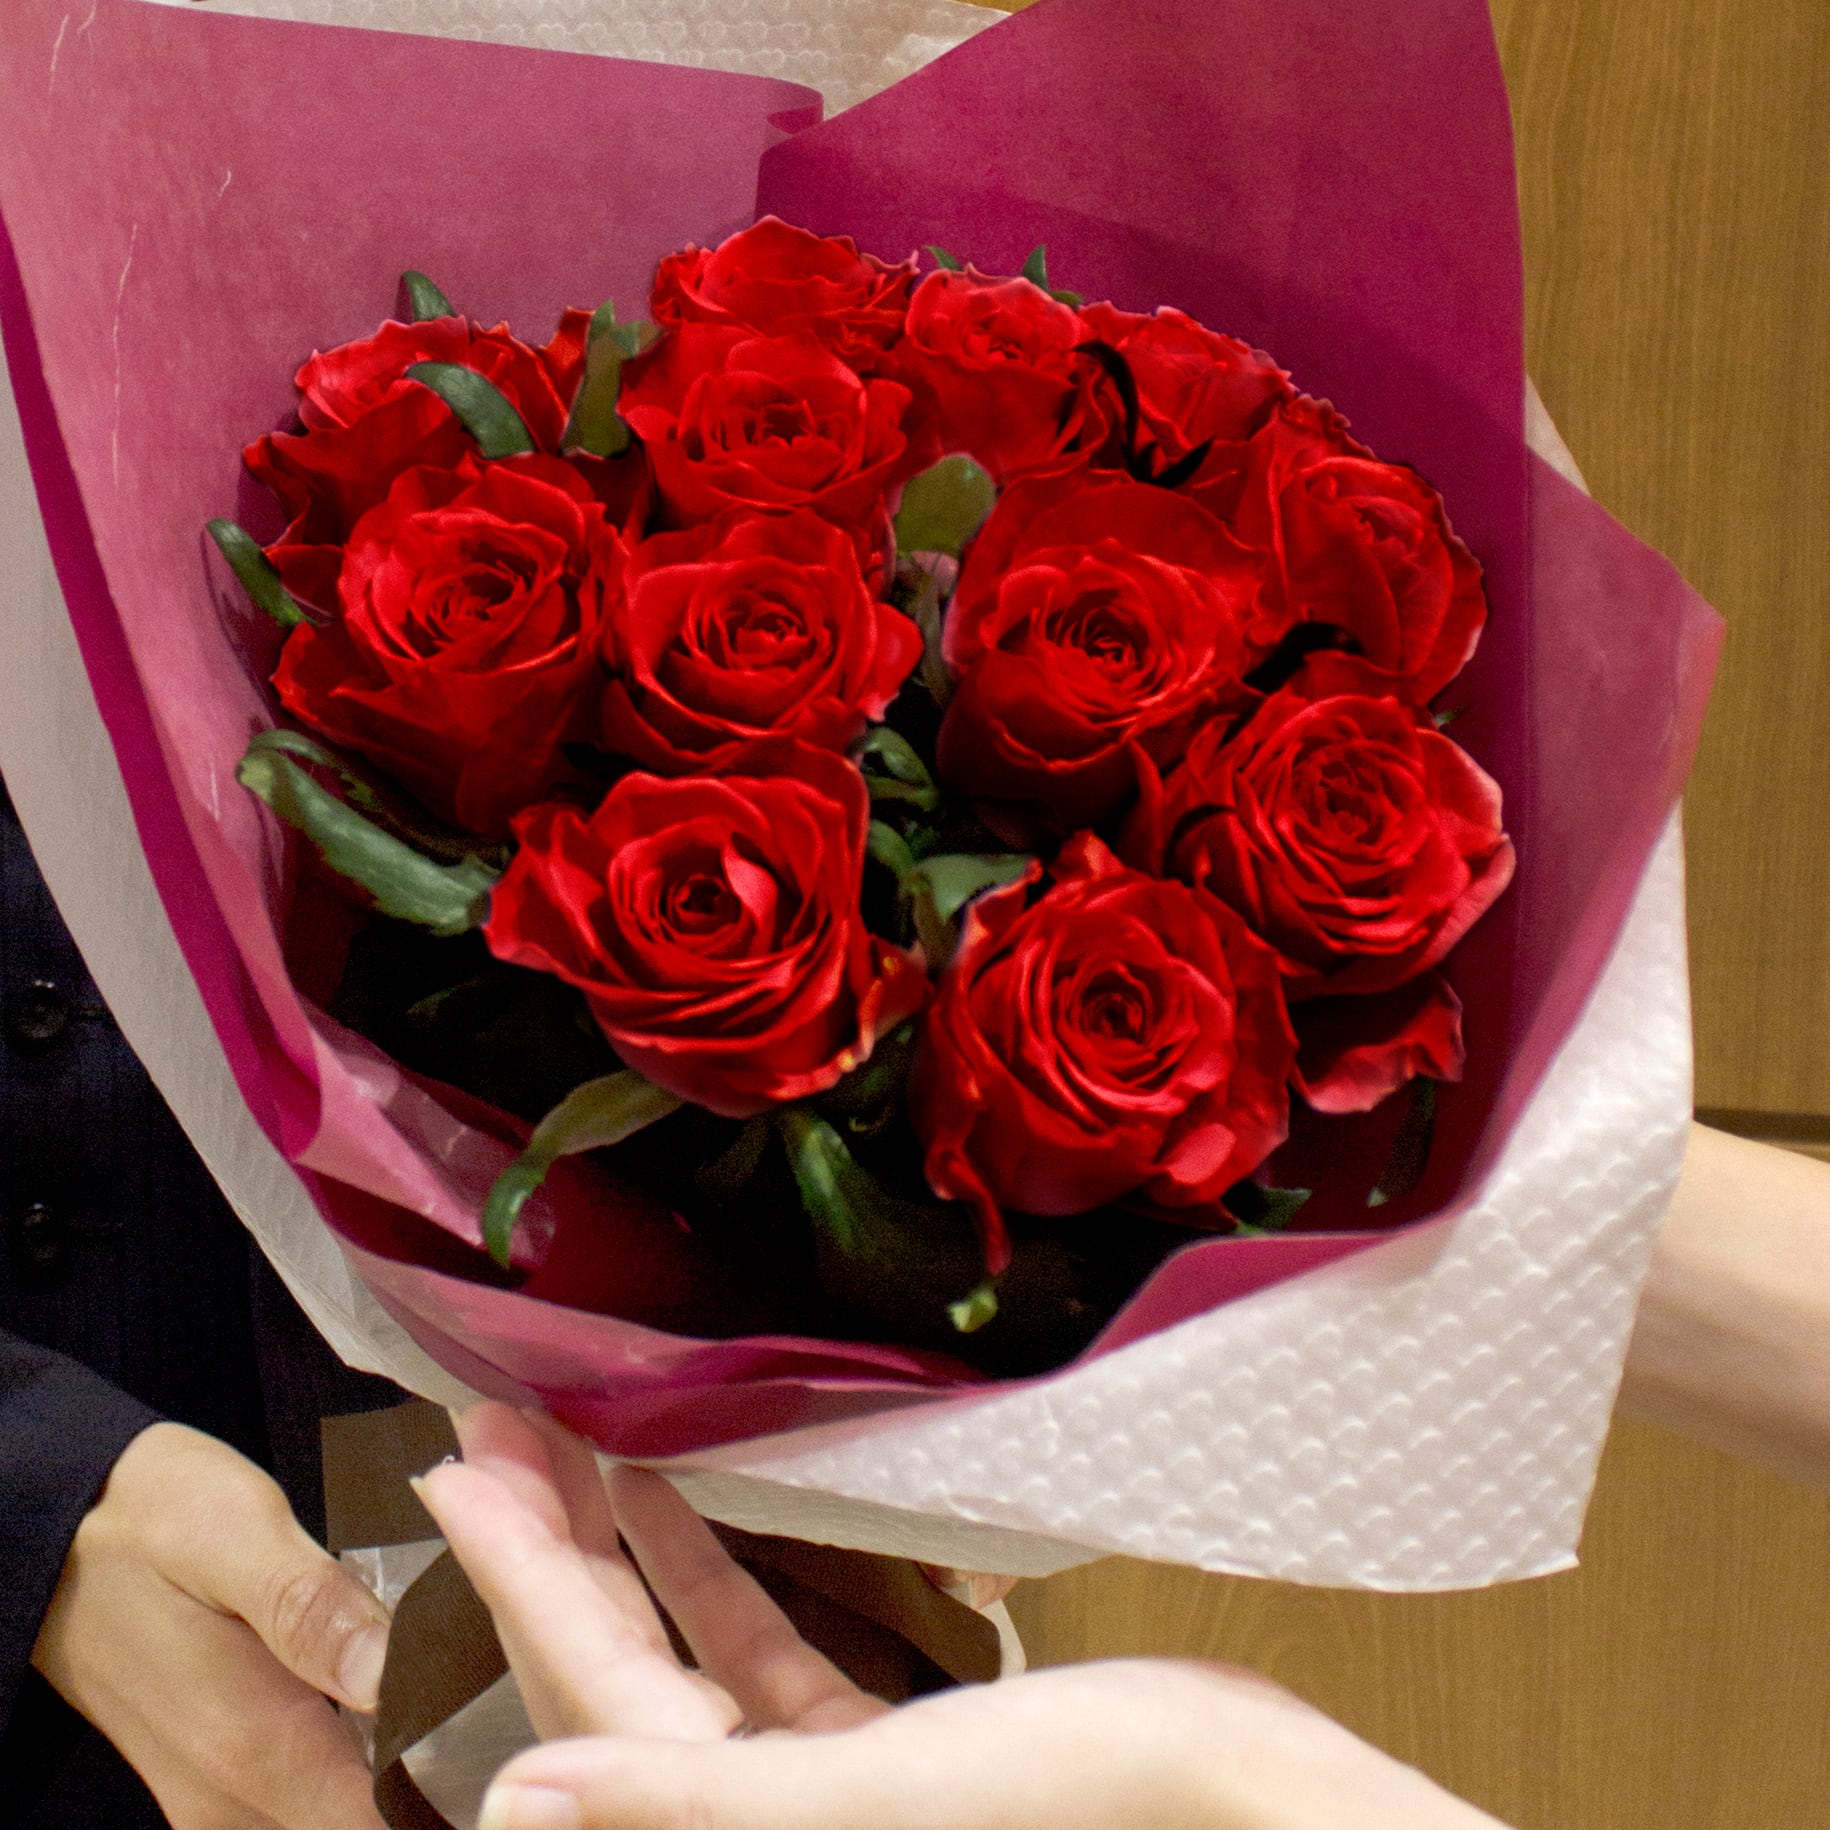 ダズンローズ花束 赤 バレンタイン ホワイトデー 記念日 プロポーズ 結婚記念日 誕生日 お祝い フラワーギフト専門店 Conoka Online Shop お花や観葉植物で記念日を彩る